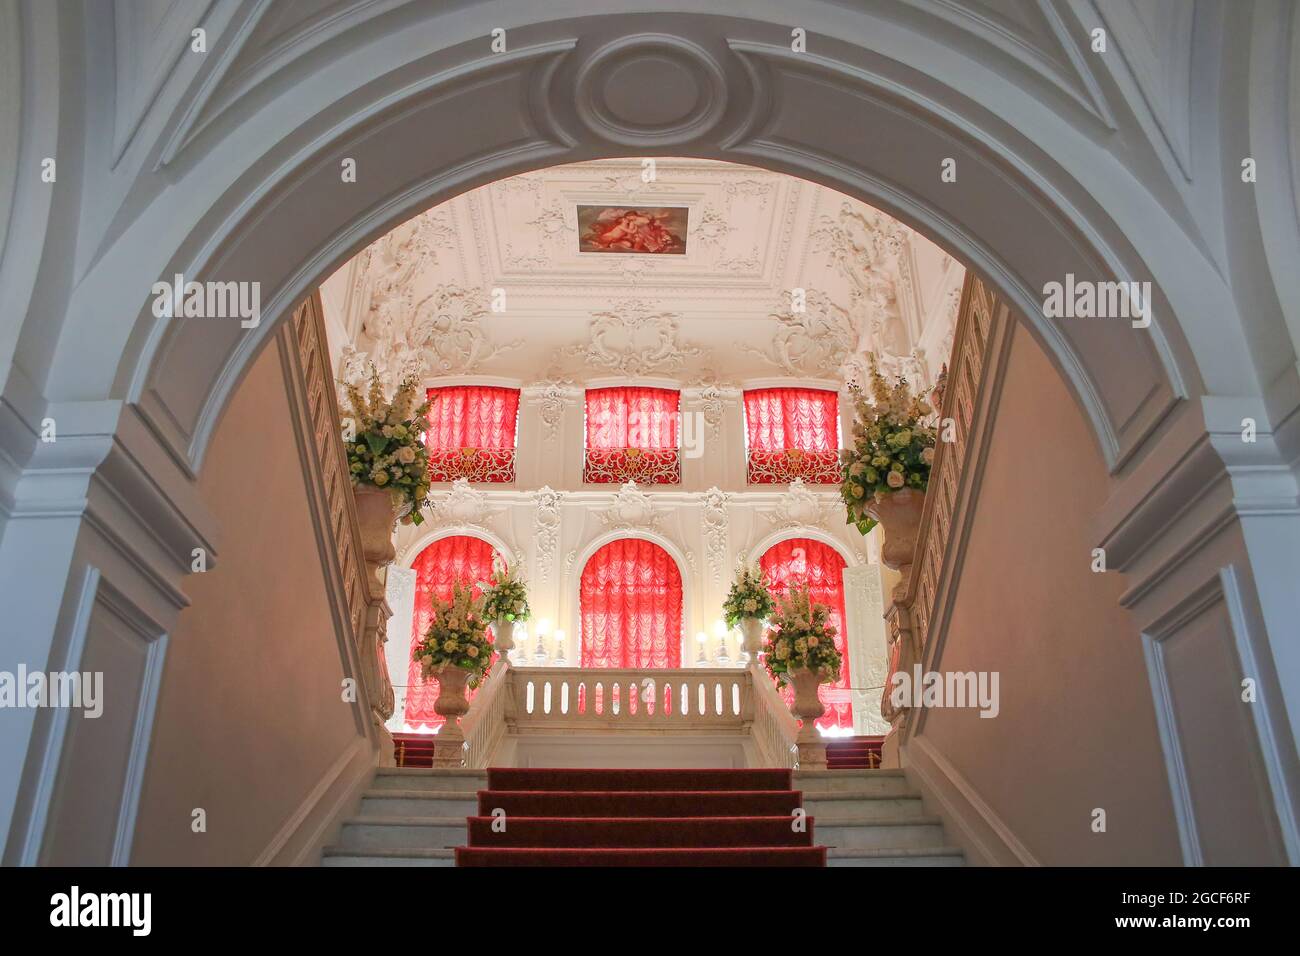 Scala principale nel Palazzo di Caterina vicino a San Pietroburgo, Russia. I gradini e le balaustre in marmo bianco sono impreziositi da vasi. Foto Stock